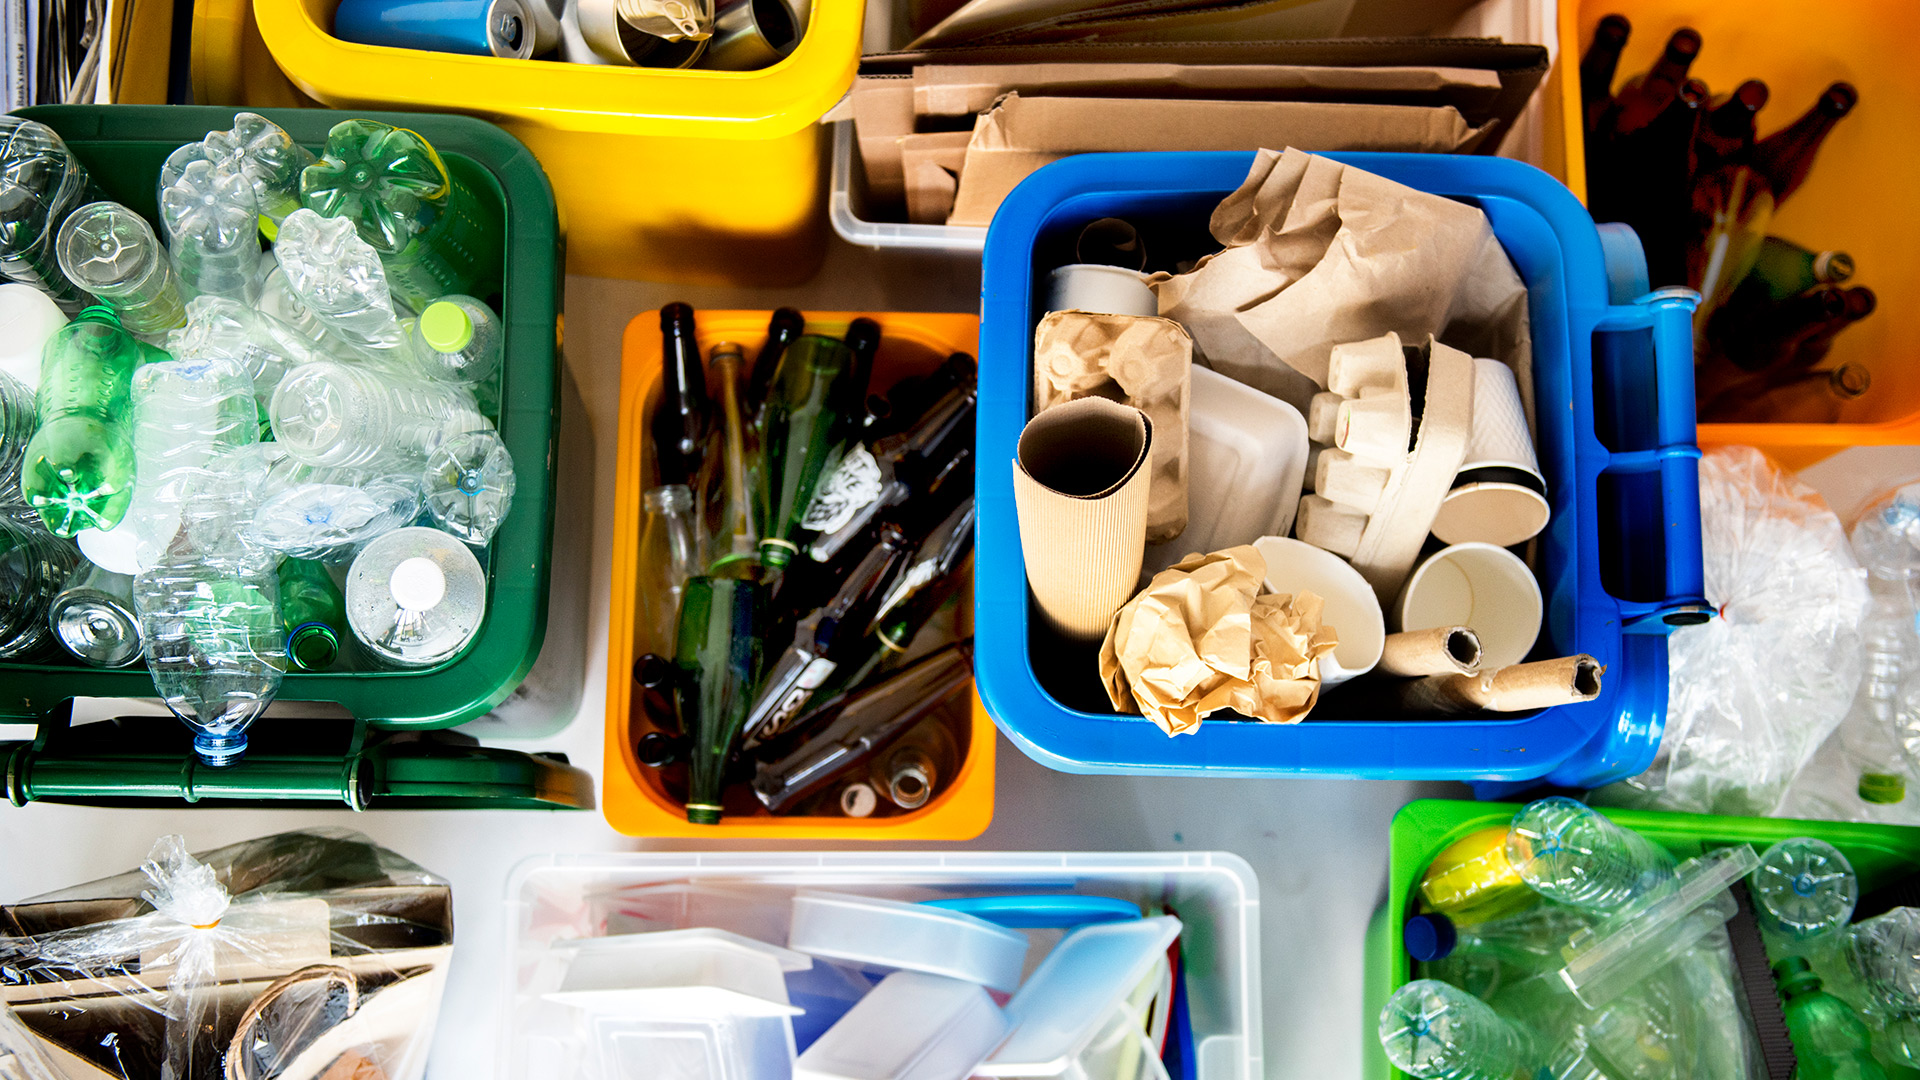 El valor del reciclado es la reutilización (Shutterstock)